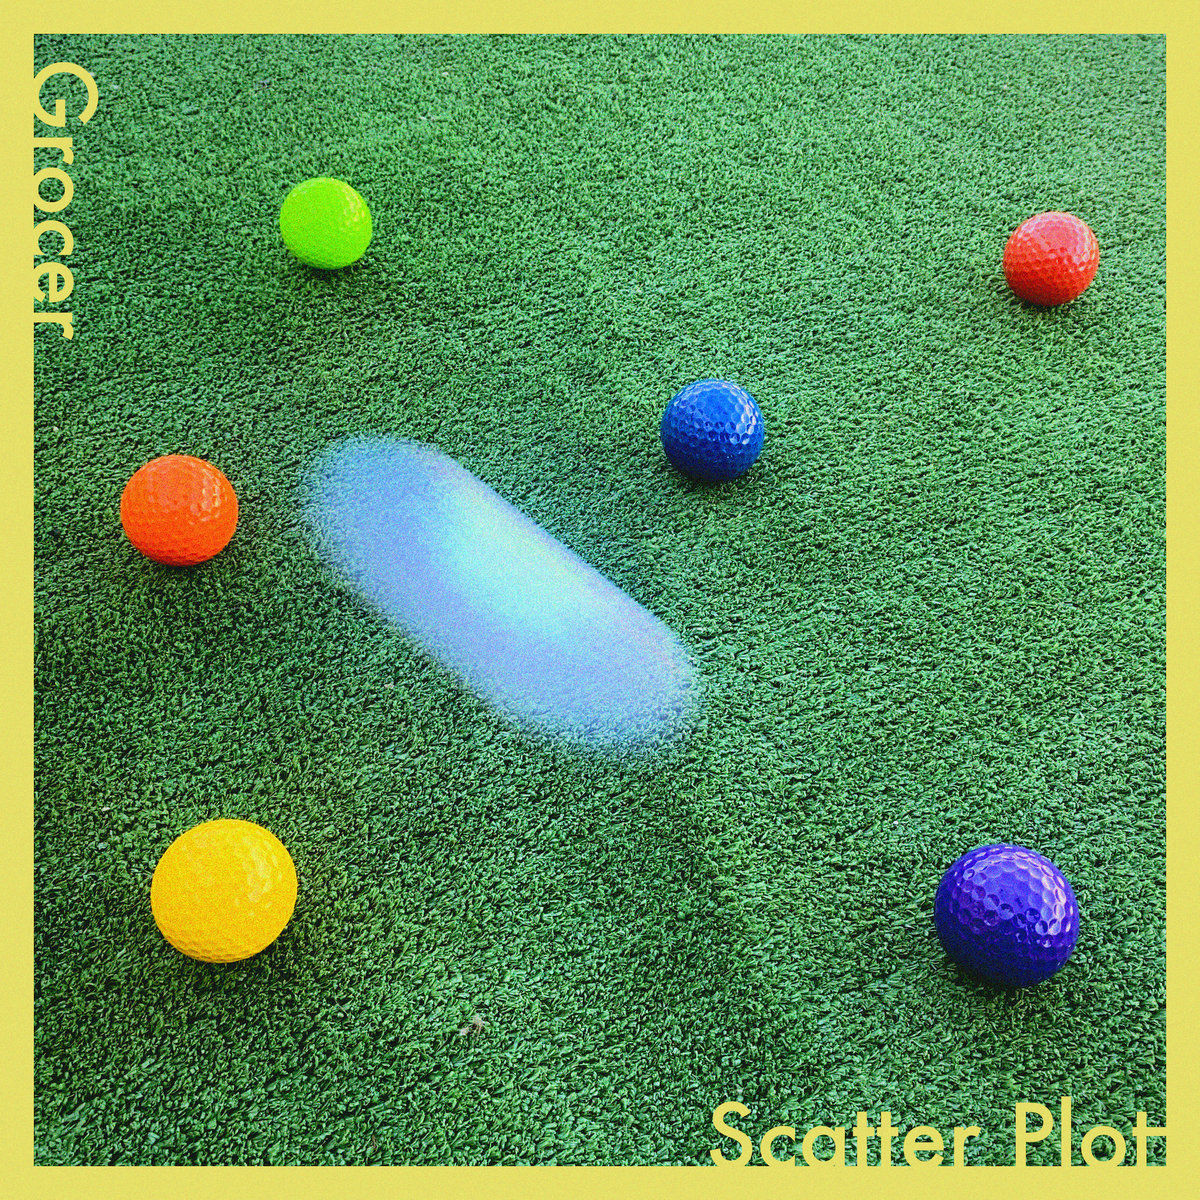 grocer scatter plot album art - colourful plastic golf balls on green astroturf